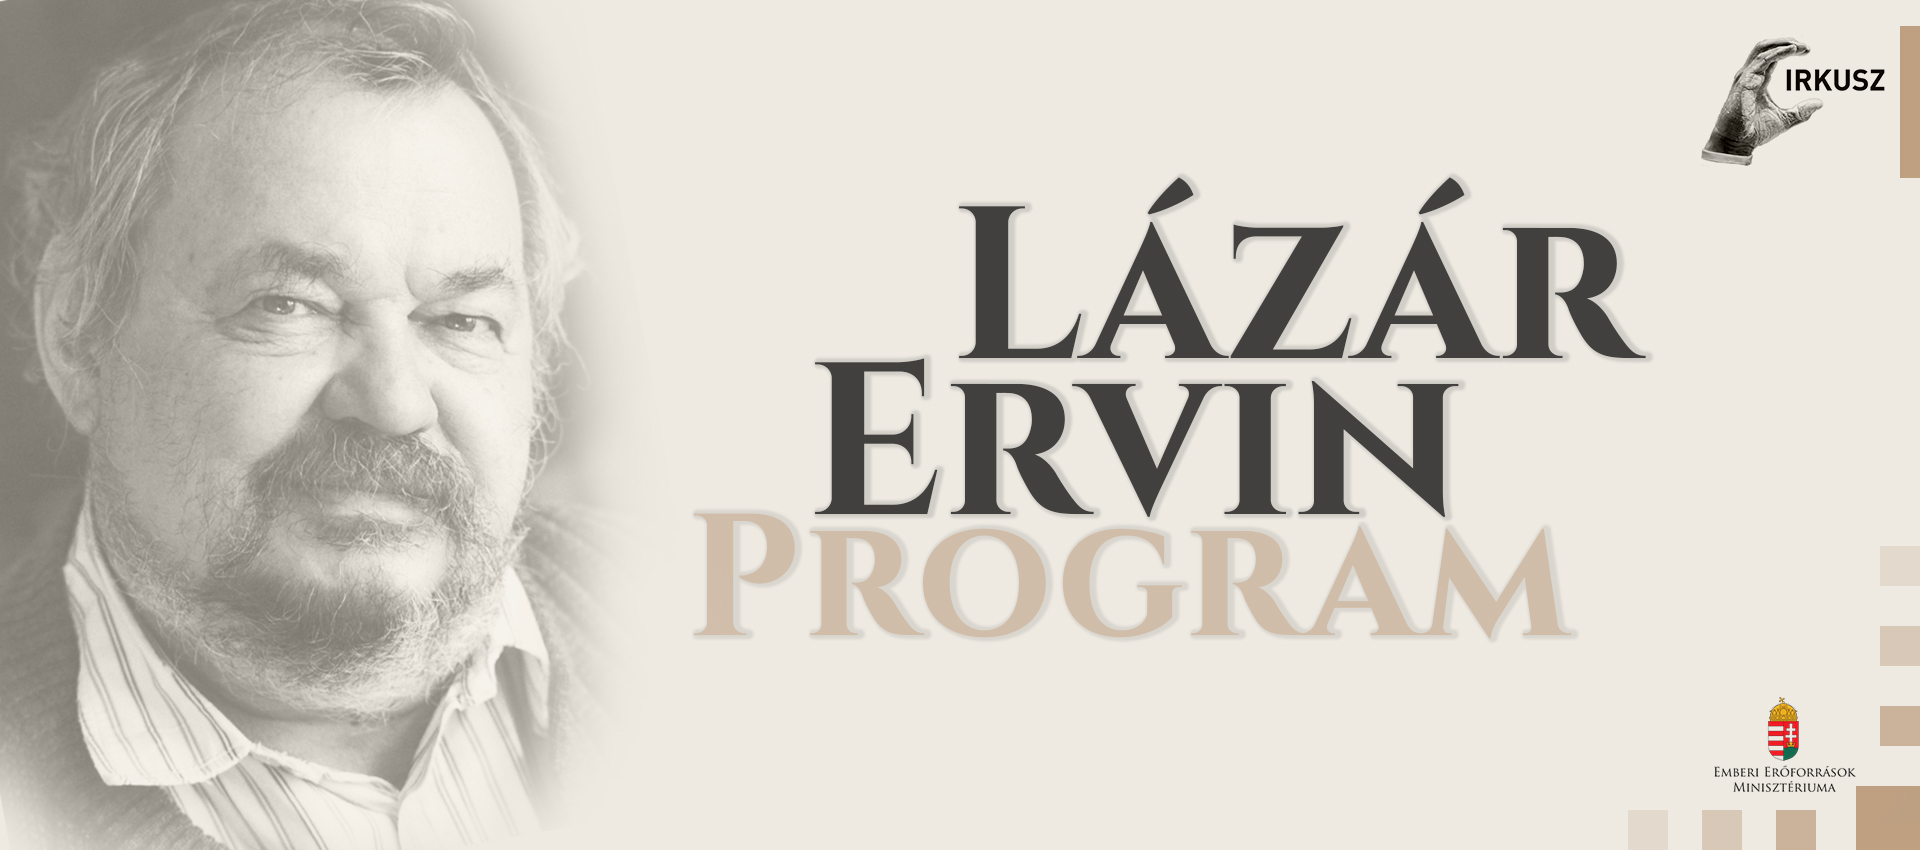 Lázár Ervin Program - 275 program valósulhat meg jövőre